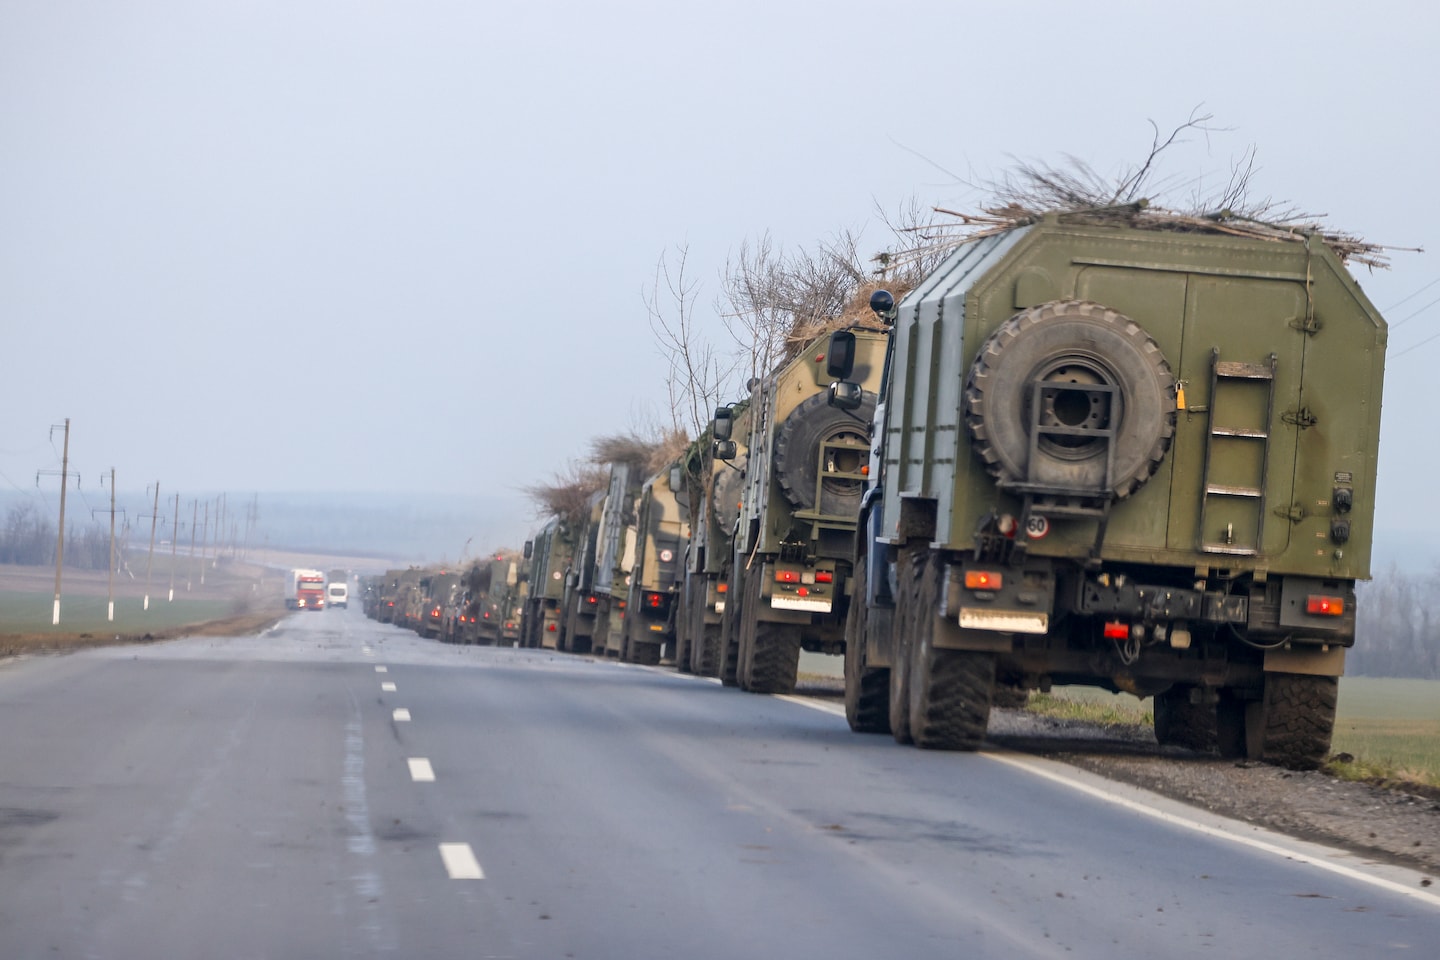 Chiến sự Ukraine: Quân đội Nga dùng cành cây, rơm rạ để ngụy trang khiến các chuyên gia phân tích bối rối - Ảnh 1.